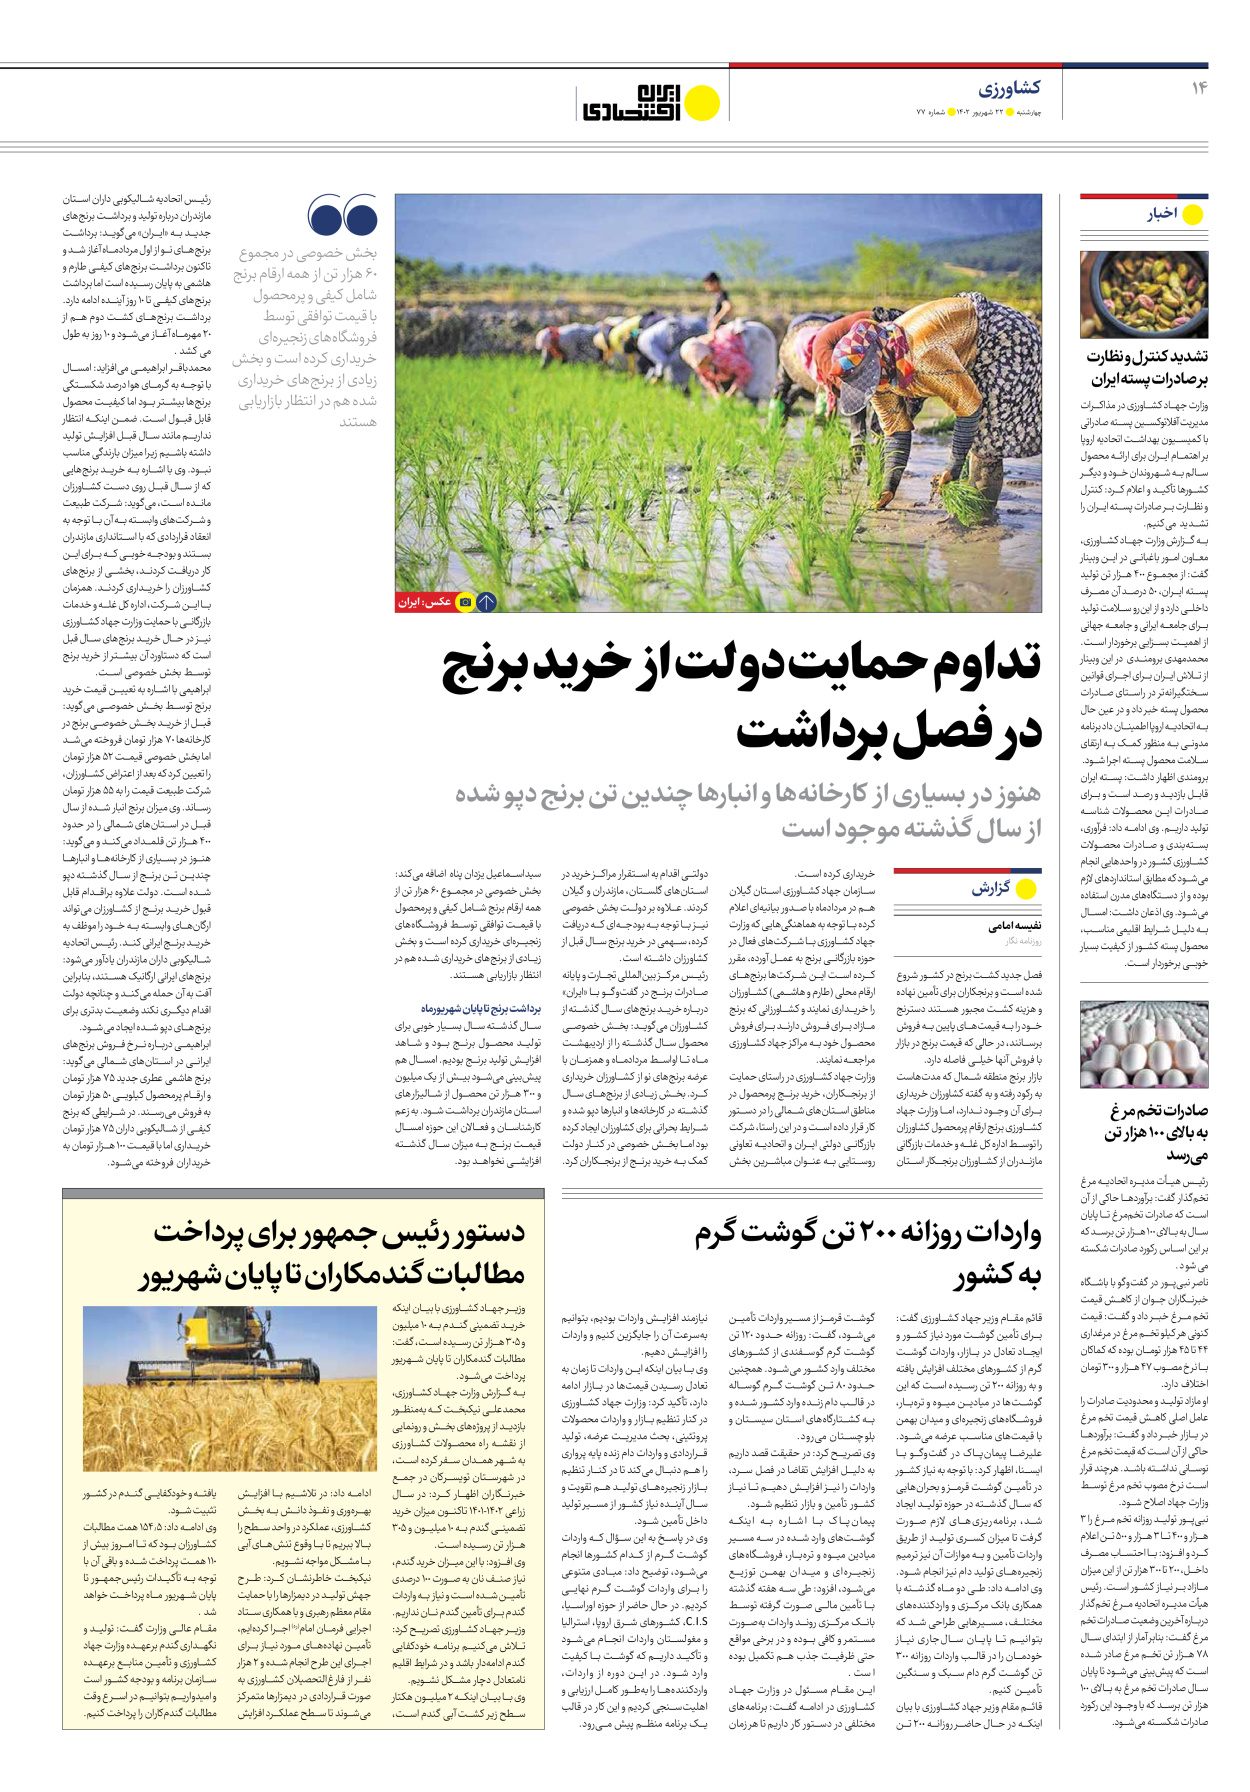 روزنامه ایران اقتصادی - شماره هفتاد و هفت - ۲۲ شهریور ۱۴۰۲ - صفحه ۱۴